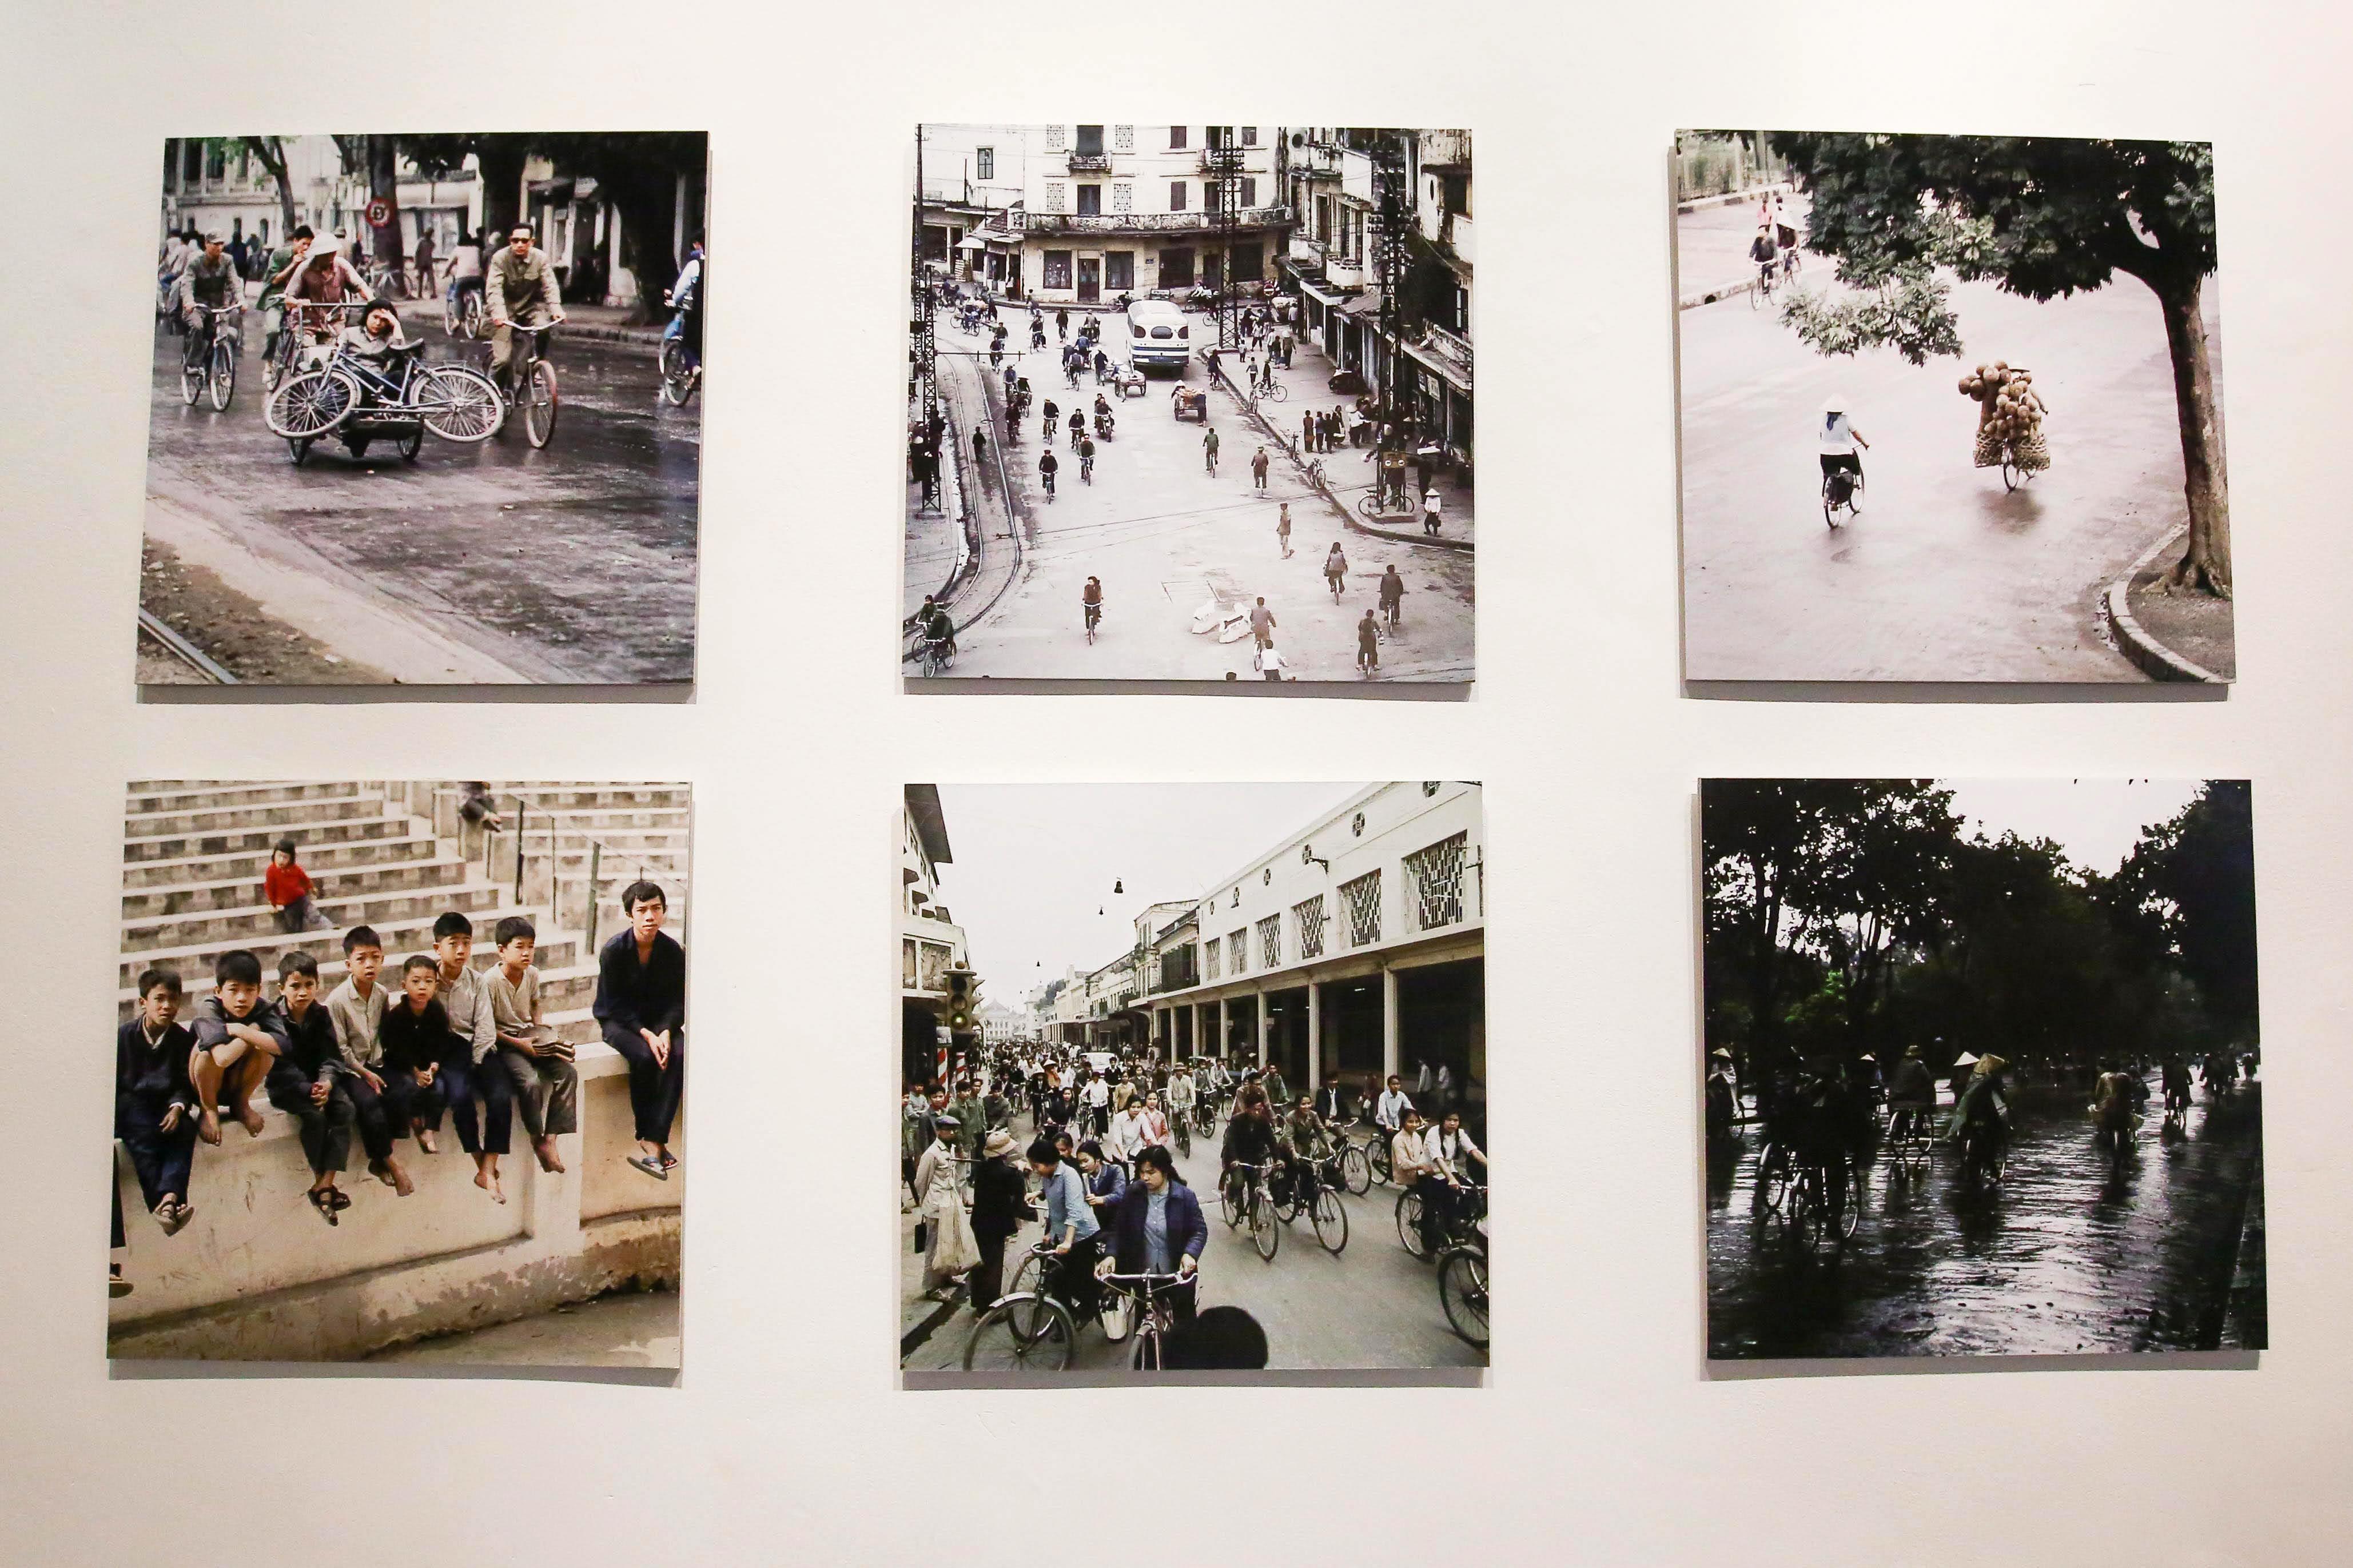 Văn hoá - Triển lãm ảnh tái hiện Hà Nội giữa những khó khăn giai đoạn 1967-1975 (Hình 2).